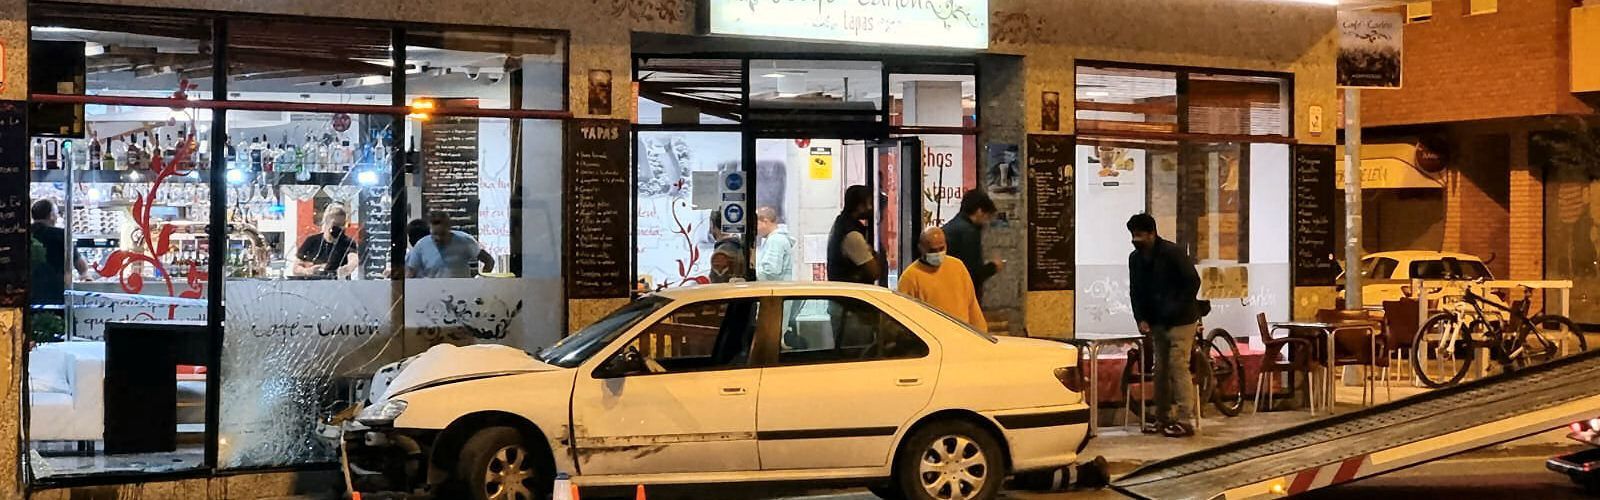 S’empotra un turisme a Benicarló contra la façana d’una cafeteria